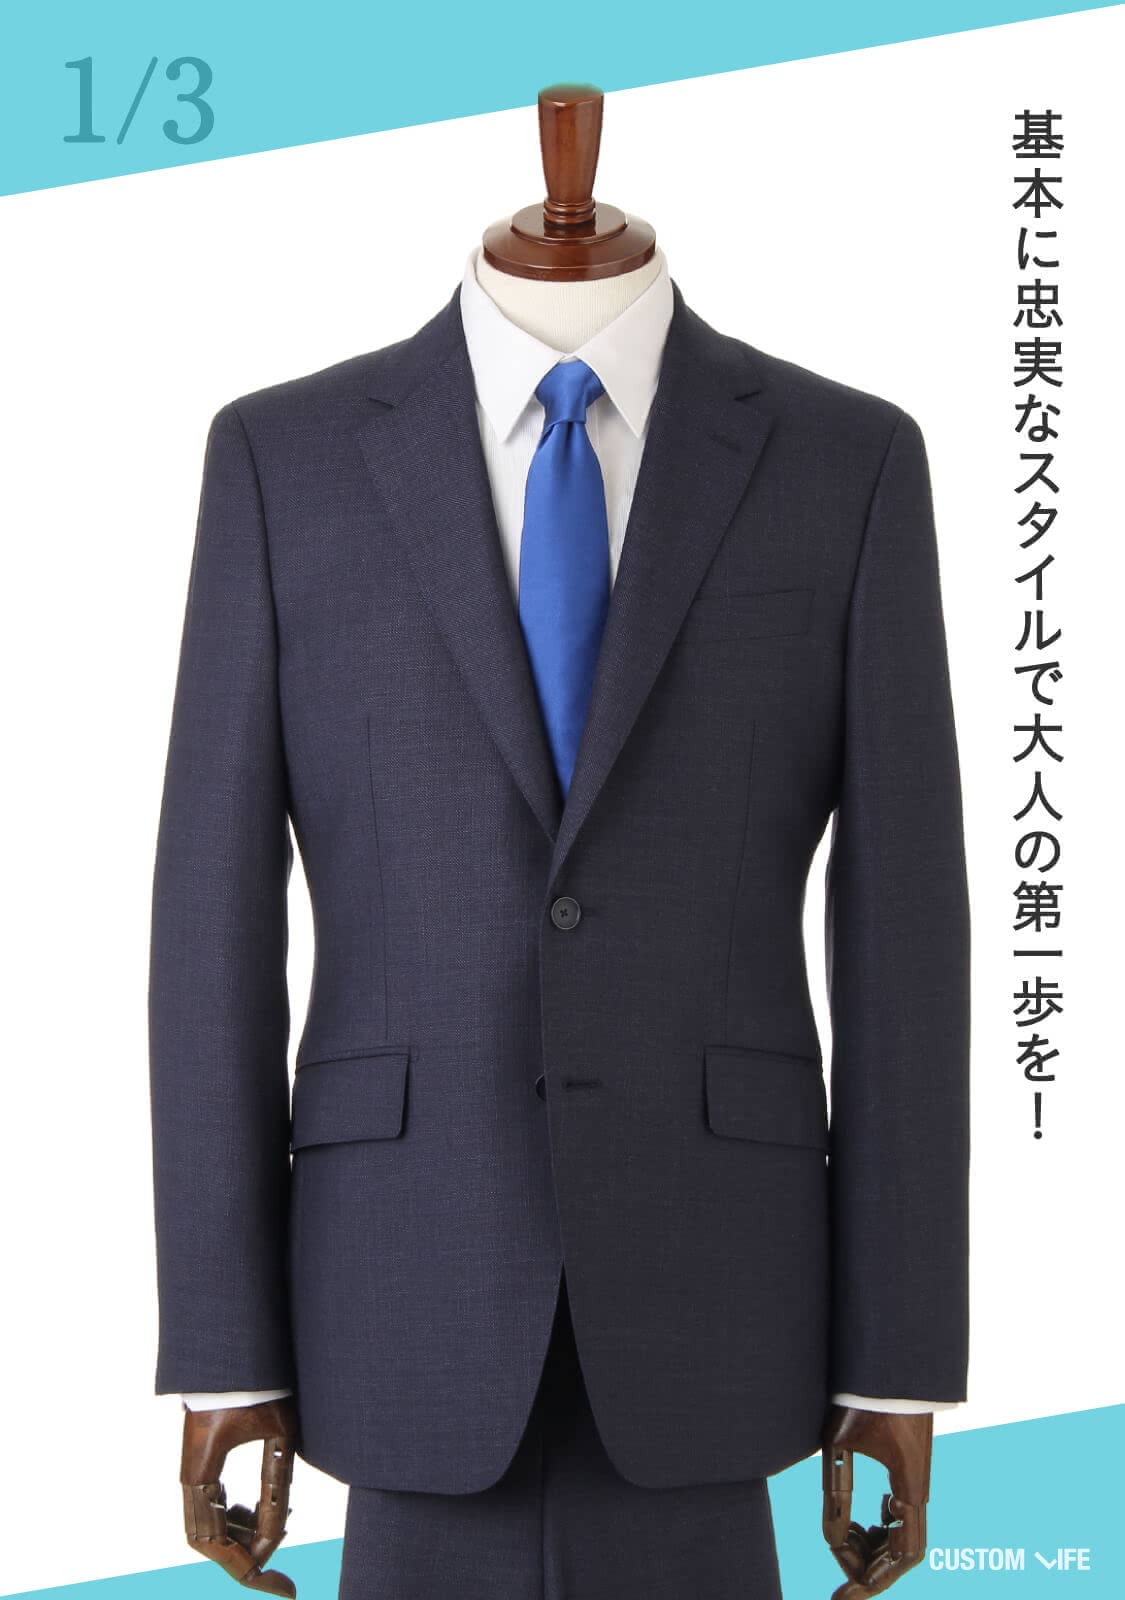 成人式のスーツはおしゃれに決めよう スタイル別おすすめコーデ6選 Customlife カスタムライフ